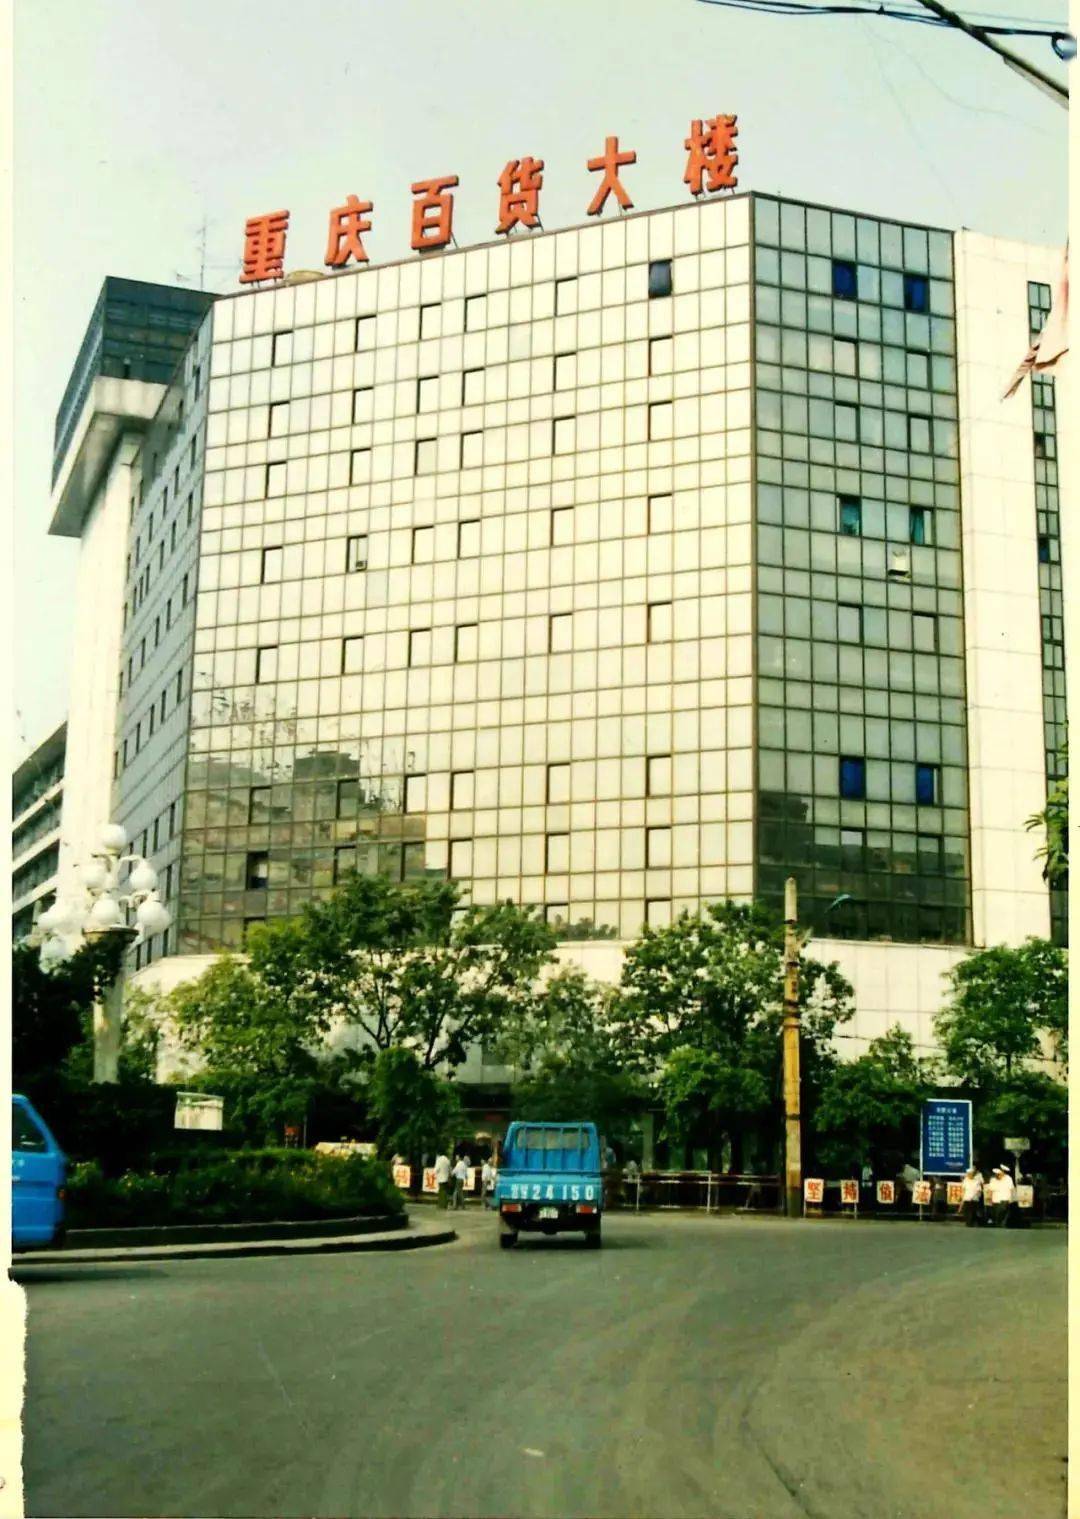 重庆百货前身为"宝元通",于1920年由萧则可等5名有志青年创建,1950年